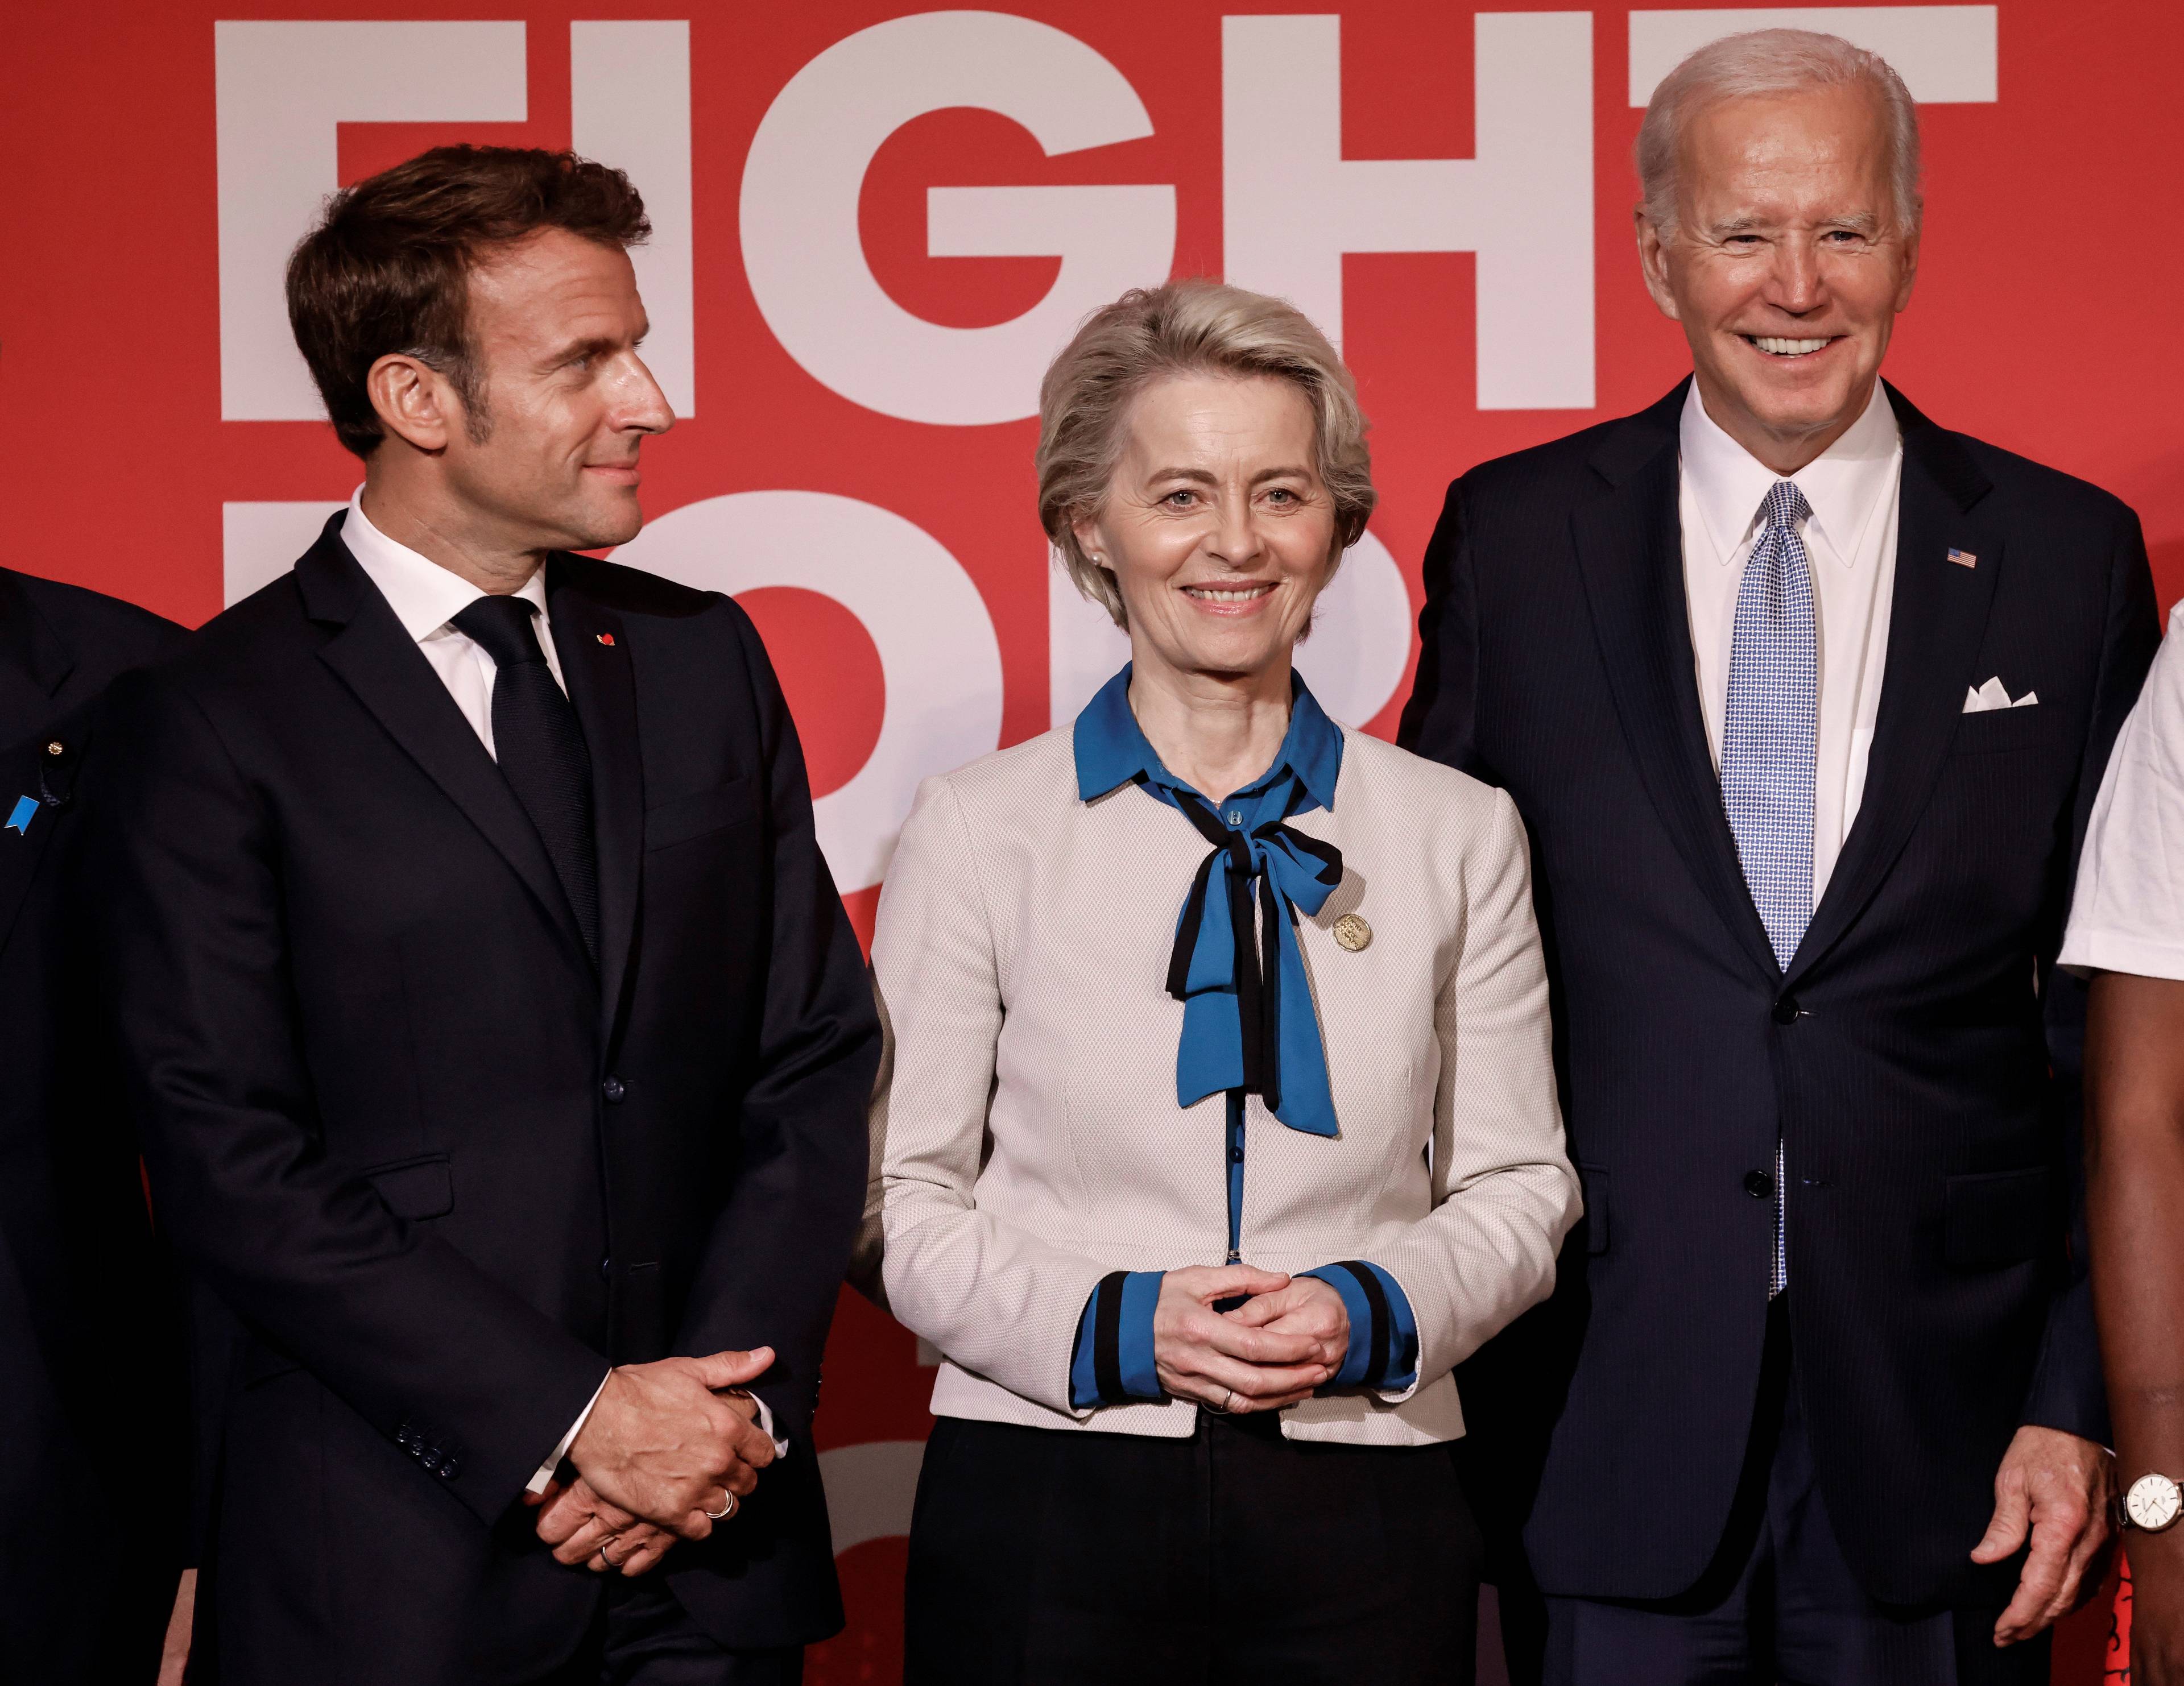 Obok siebie na czerwonym tle stoi troje przywódców, uśmiechają się: od lewej prezydent Francji Emmanuel Macron, szefowa Komisji Europejskiej Ursula von der Leyen i prezydent Stanów Zjednoczonych Joe Biden